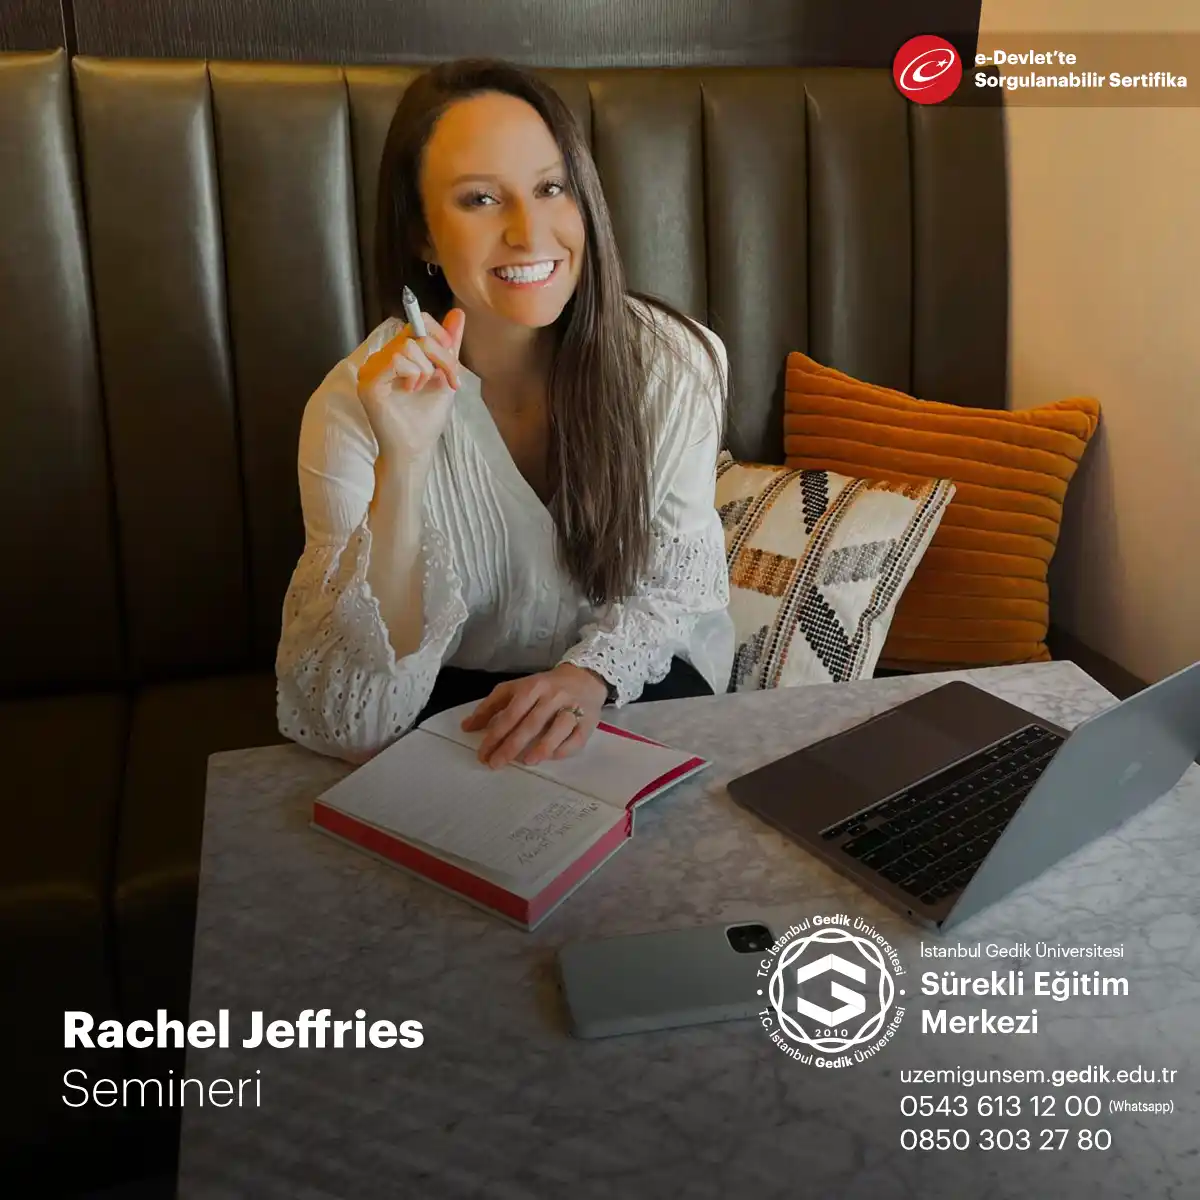 Rachel Jeffries, müzik endüstrisinde tanınmış bir isimdir. Kendisi başarılı bir şarkıcı, söz yazarı ve müzik yapımcısıdır.